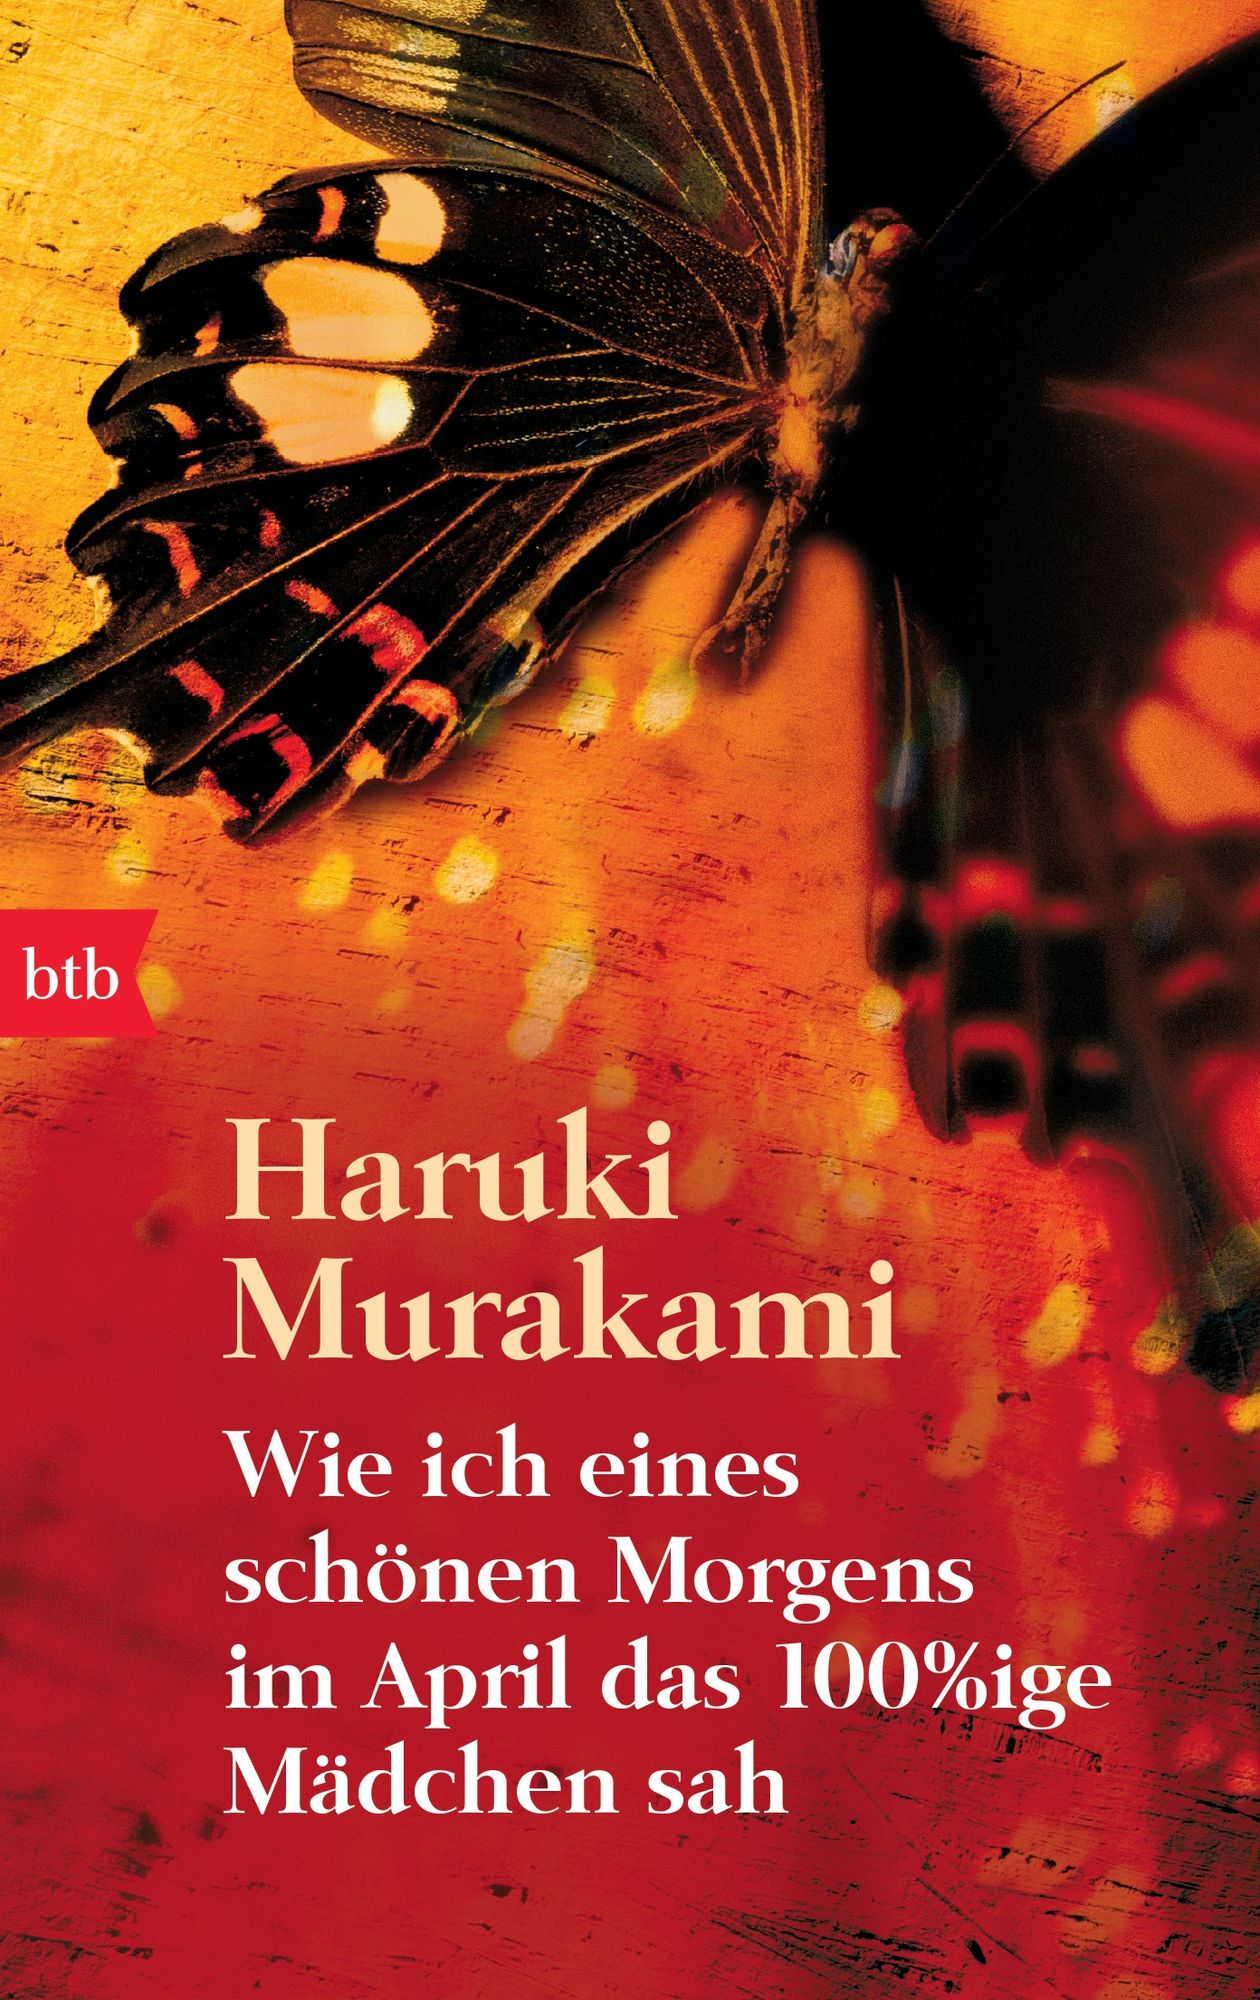 Wie ich eines schönen Morgens im April das 100%ige Mädchen sah' von 'Haruki  Murakami' - Buch - '978-3-442-73797-0